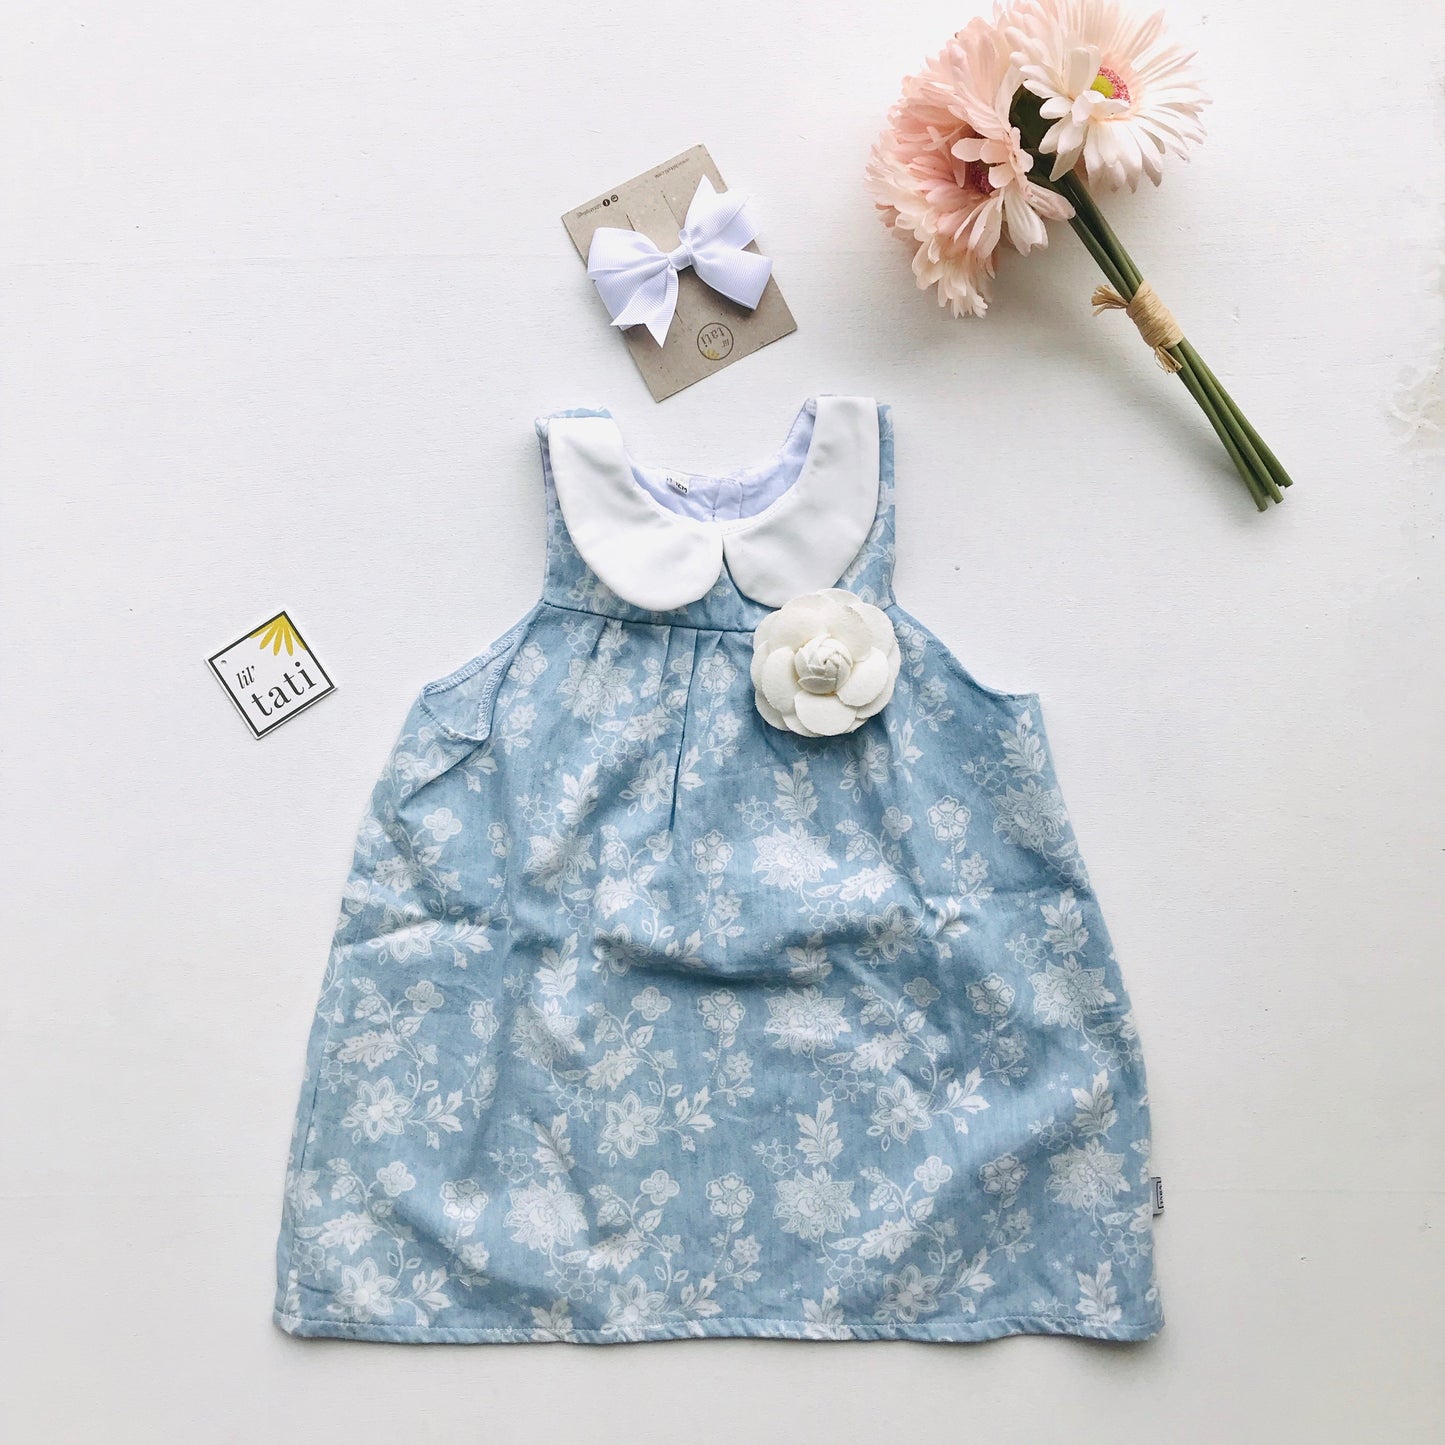 Tea Rose Dress in Soft Denim Floral Print - Lil' Tati